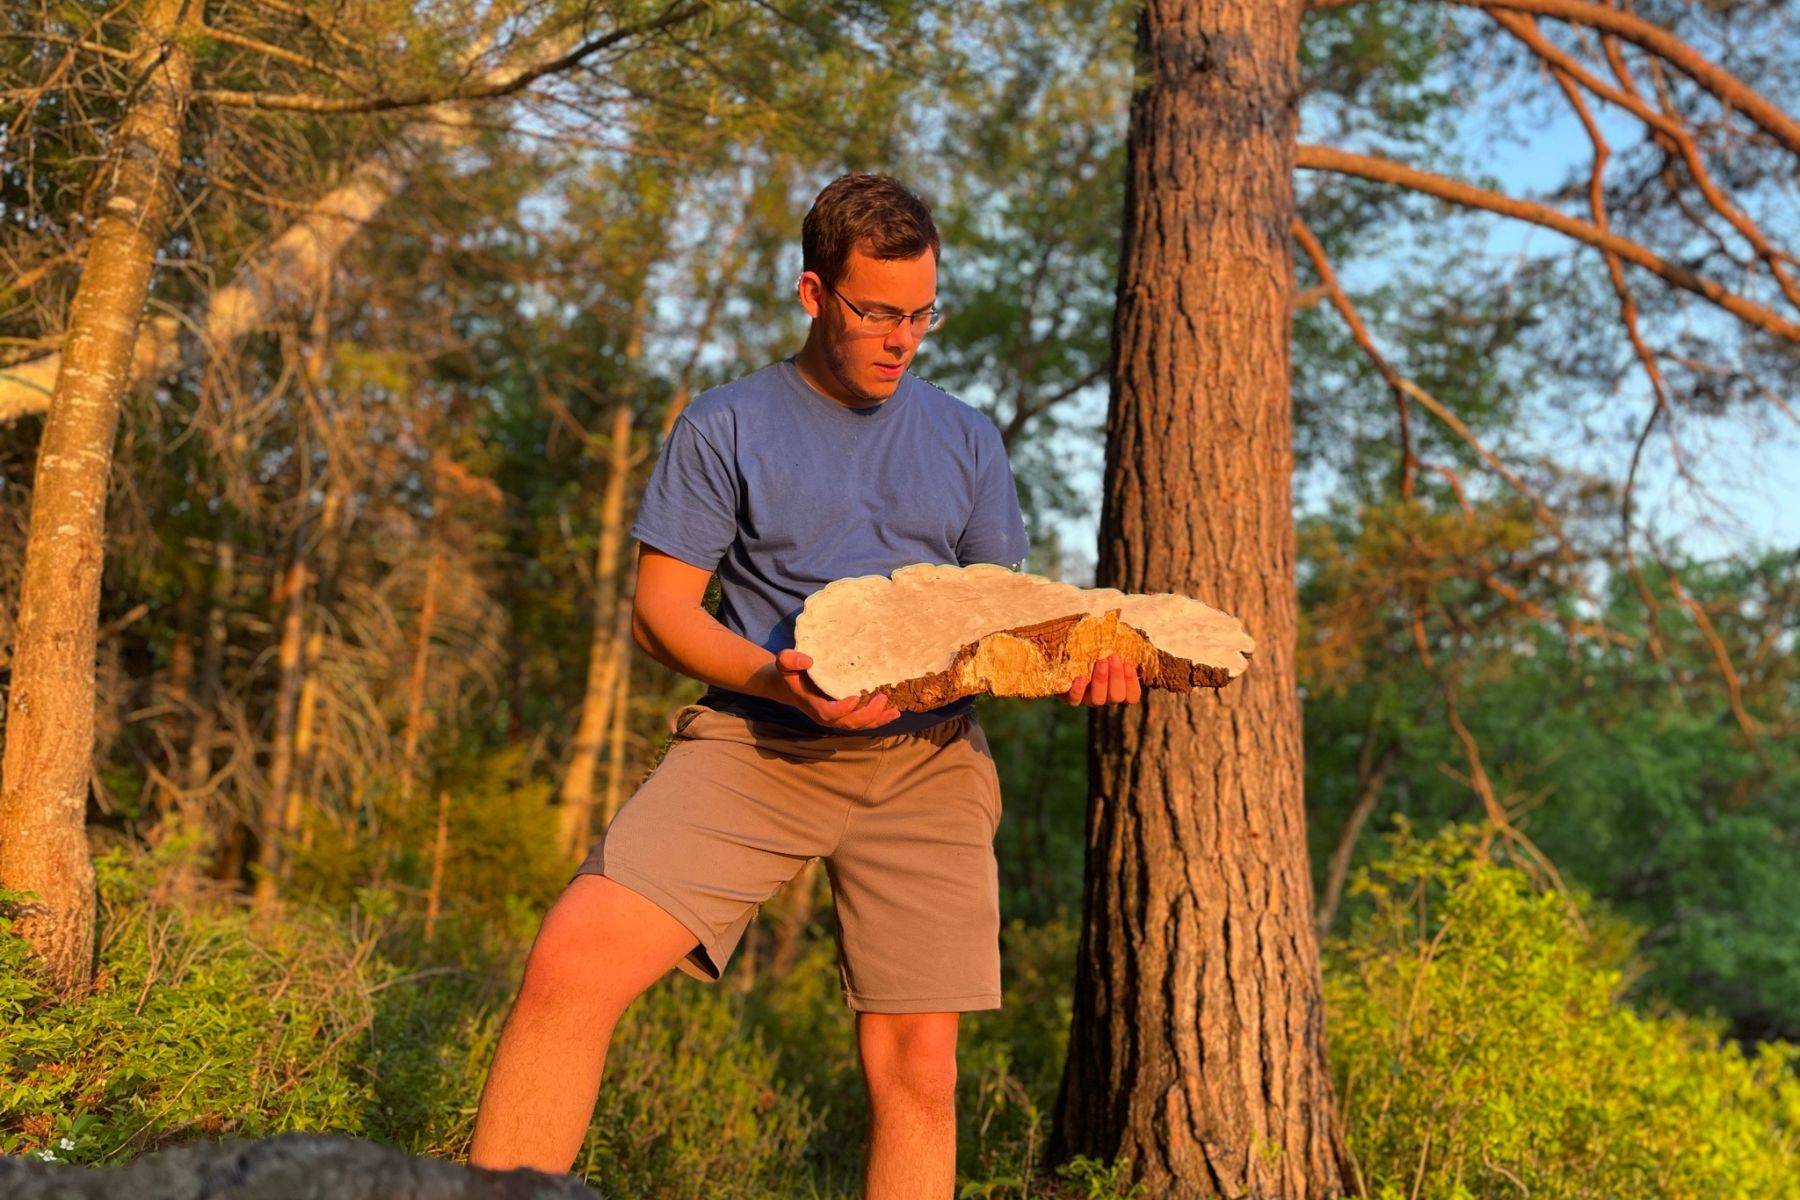 Garrett Kopp in the golden hour holding a large specimen of artist's conk mushroom or white reishi